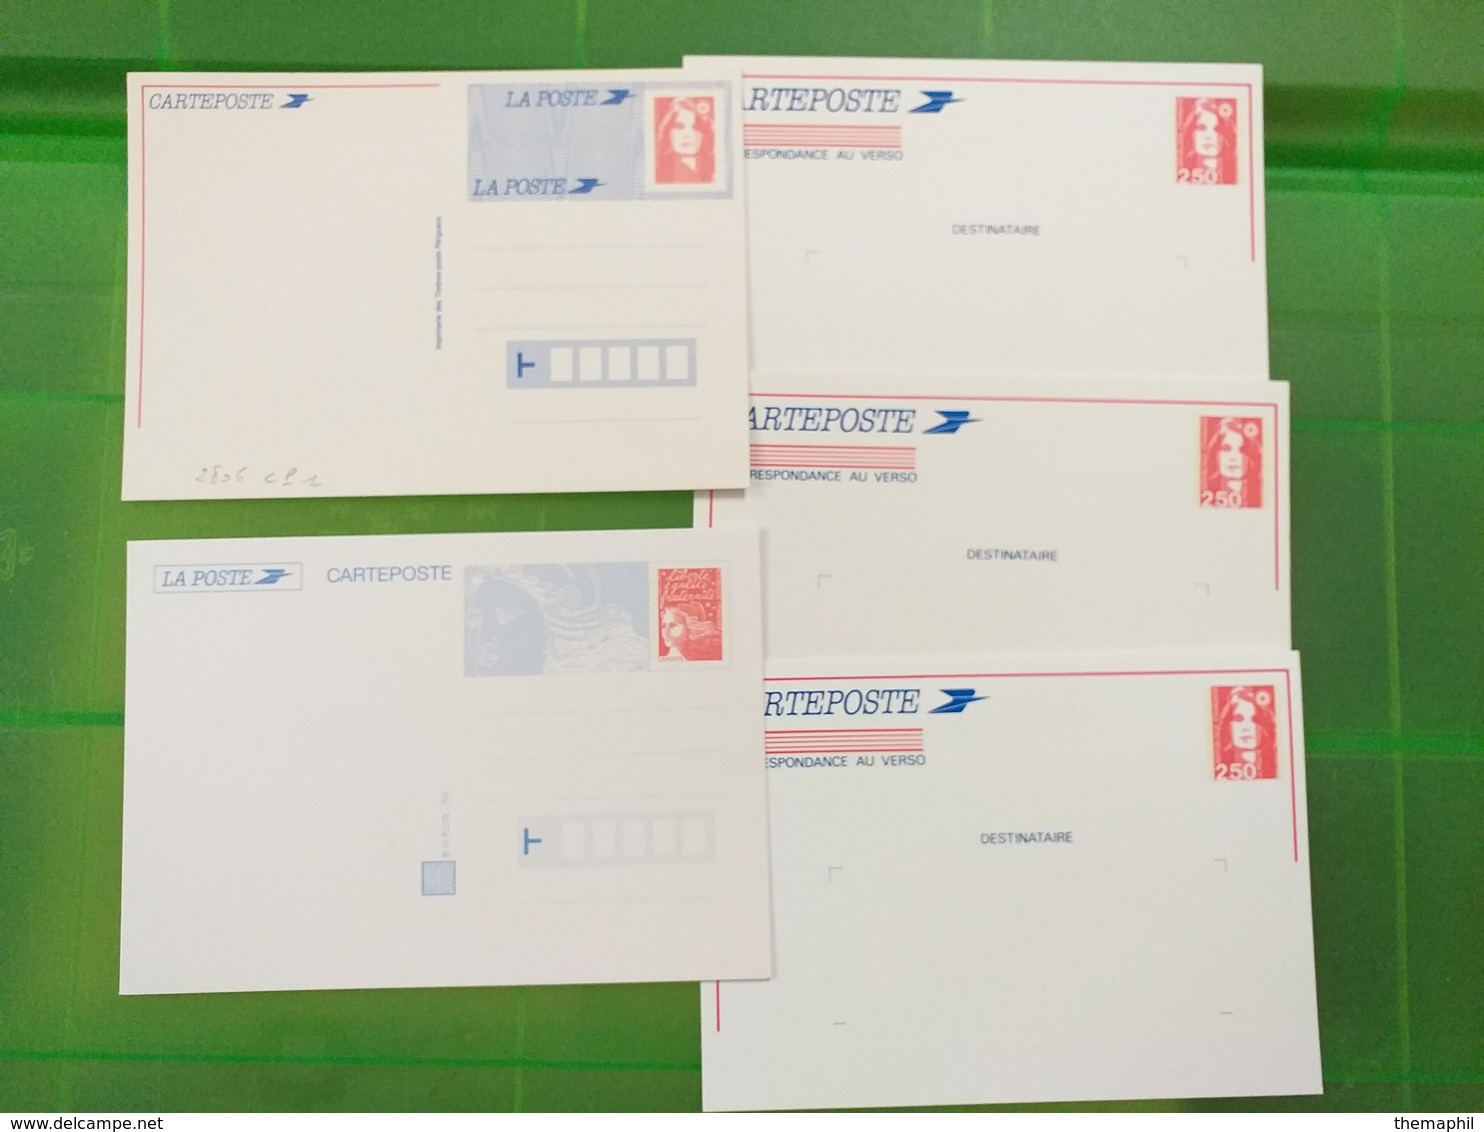 lot n° TH.79 FRANCE un lot de 250 entiers postaux neufs